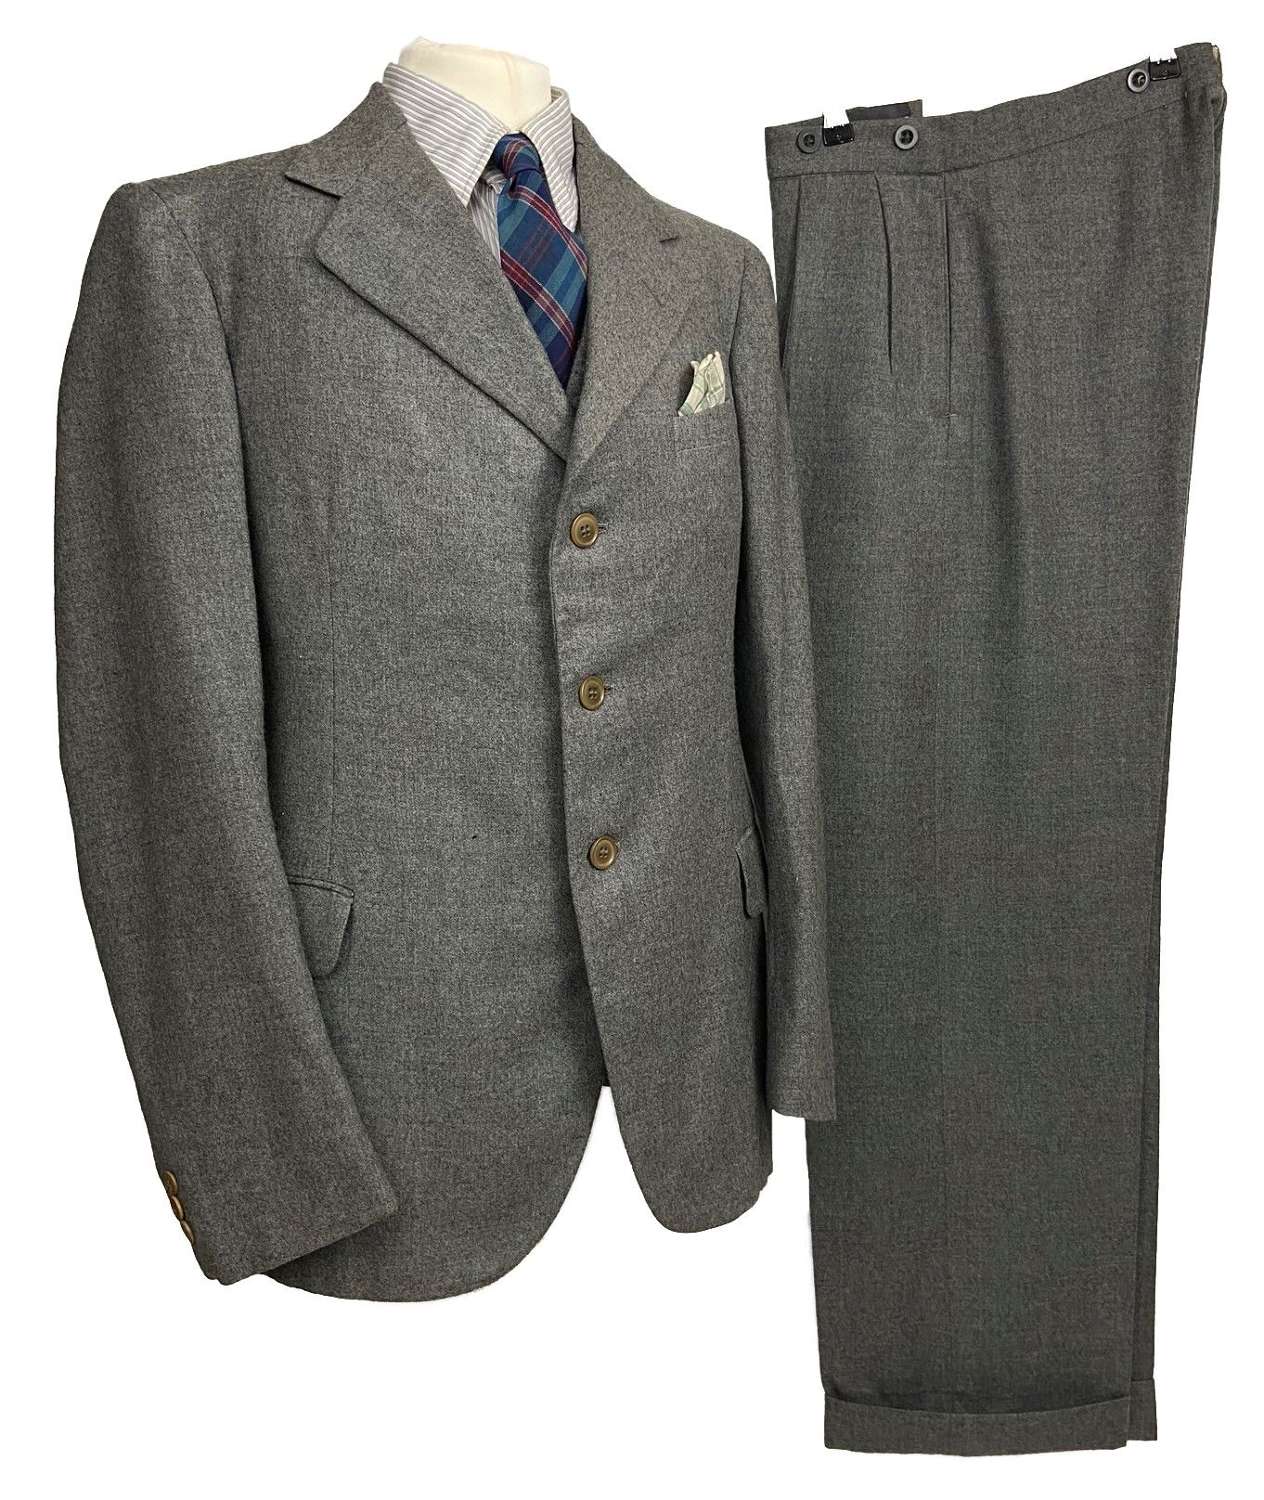 Scarce Original 1945 Dated British Demob Suit - Size 35S